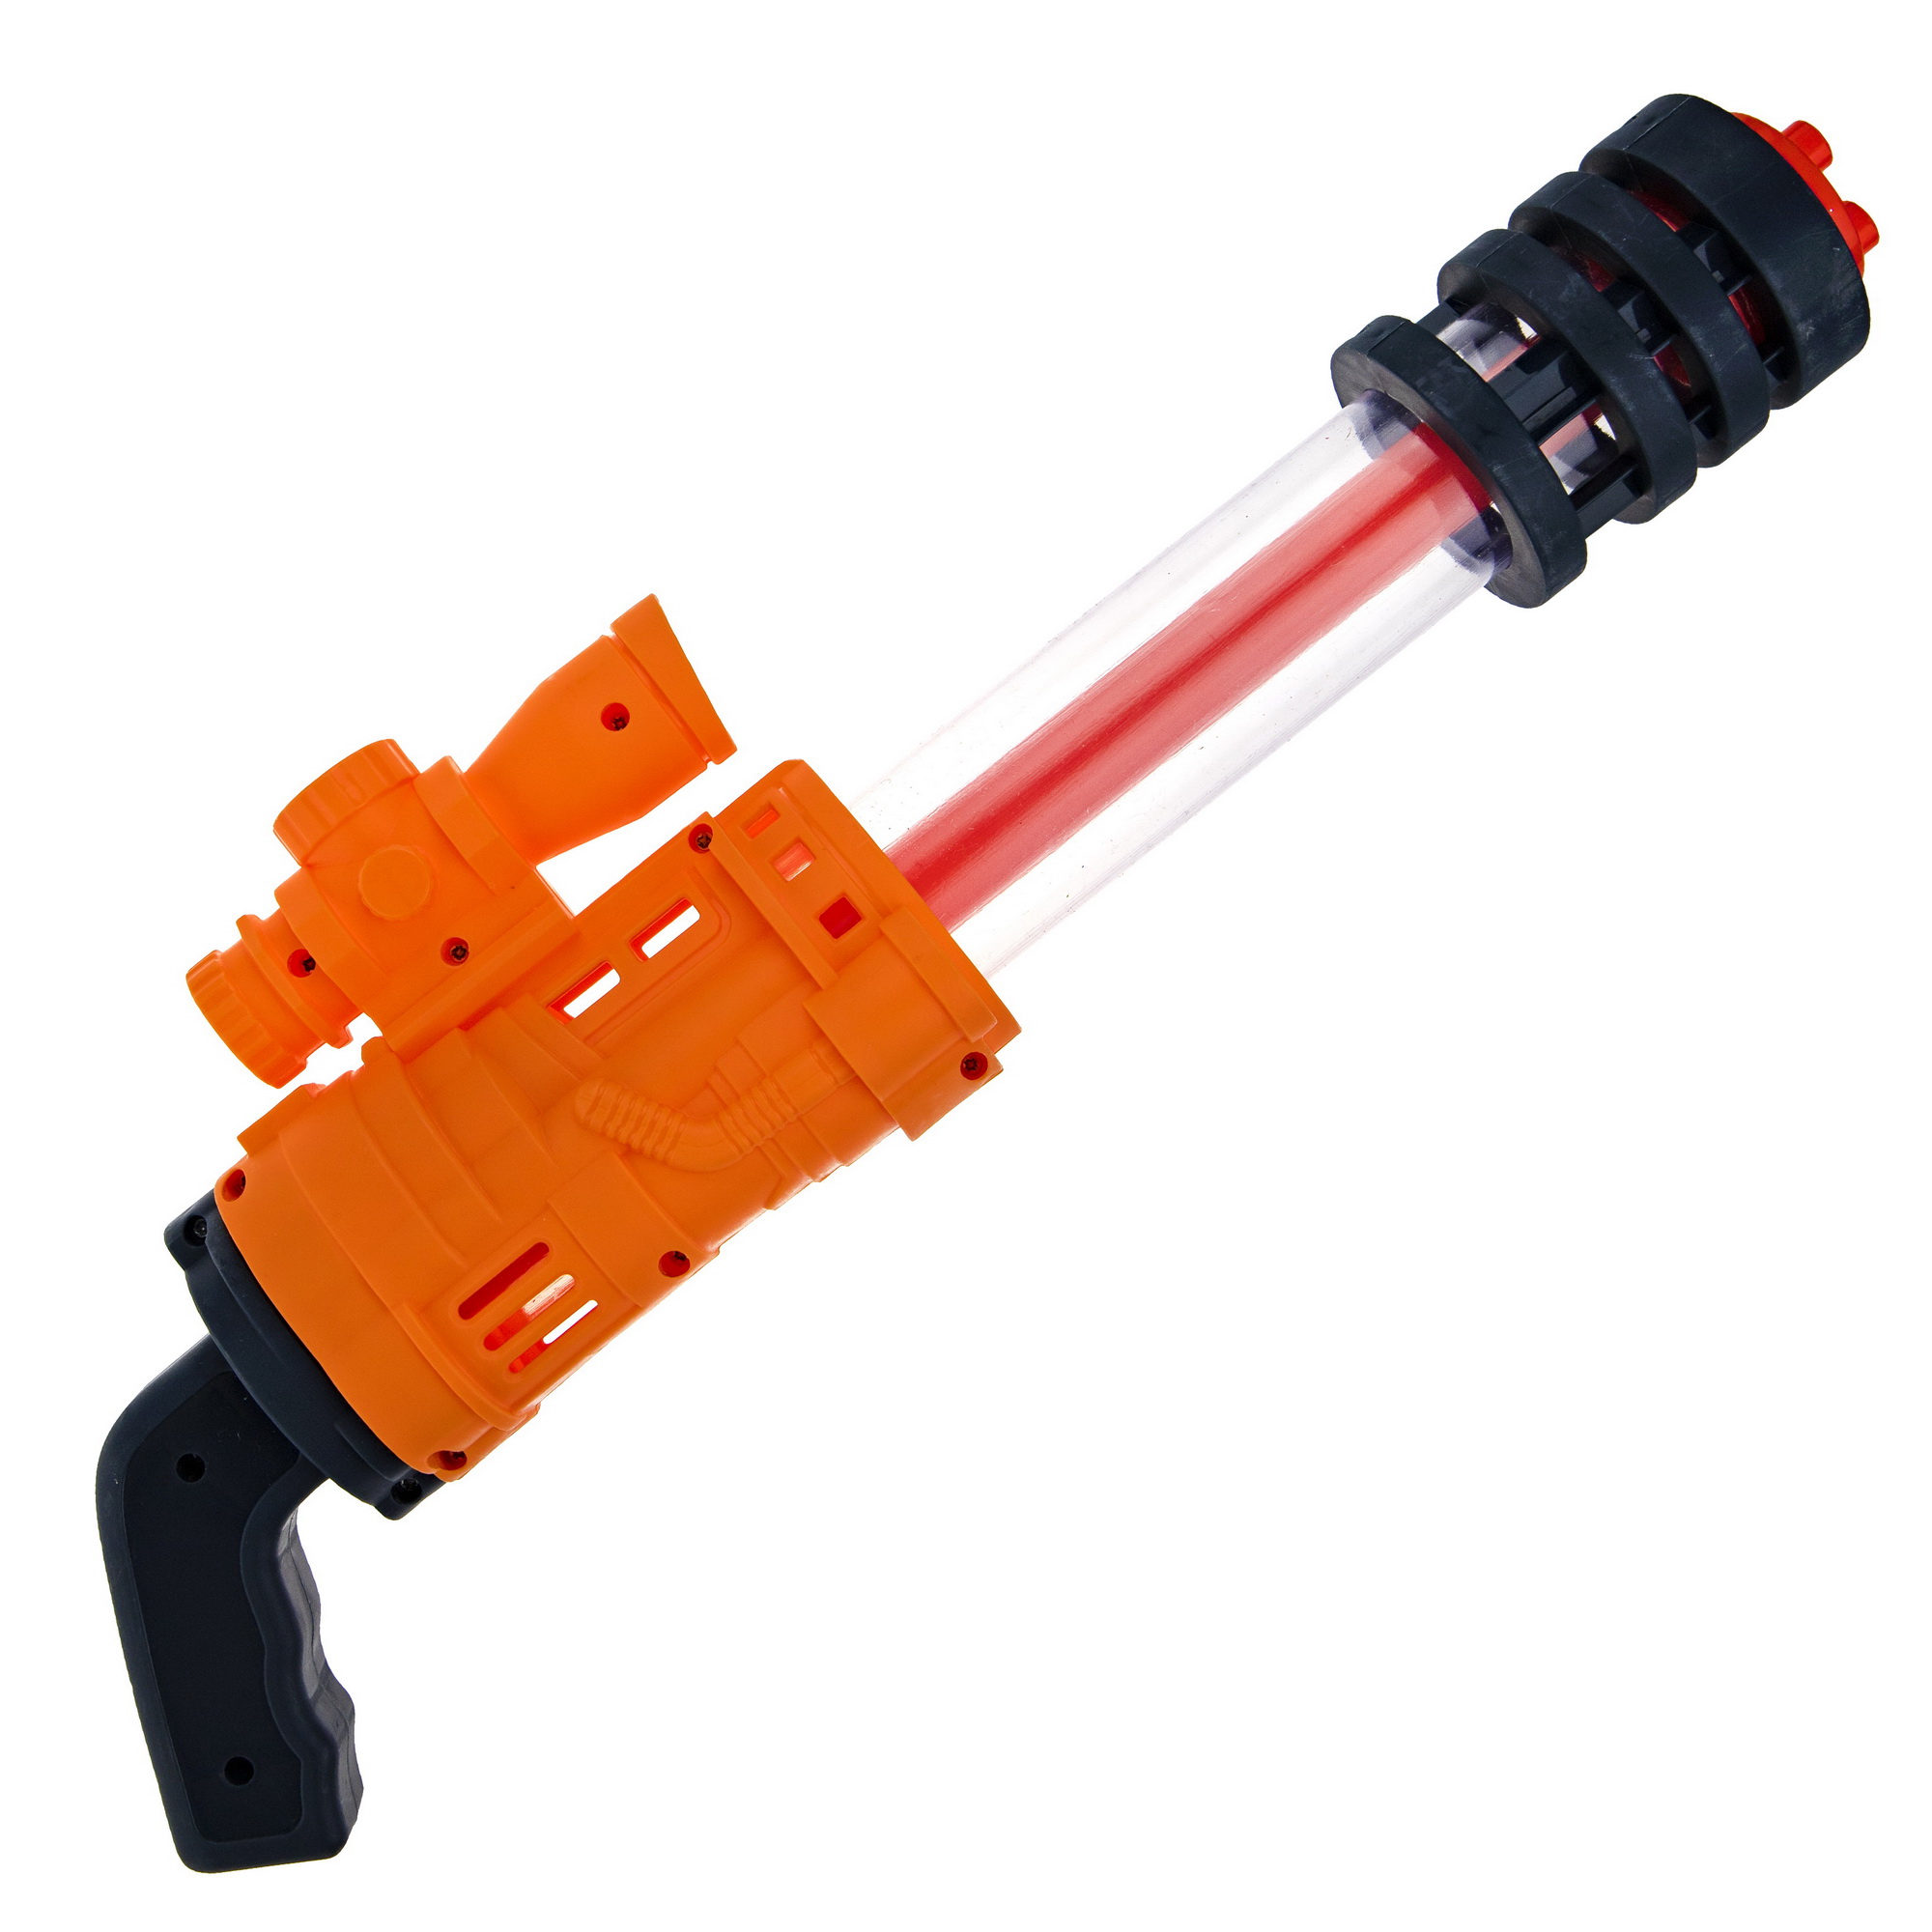 Водяной пистолет Аквамания 1TOY детское игрушечное оружие оранжевый - фото 2